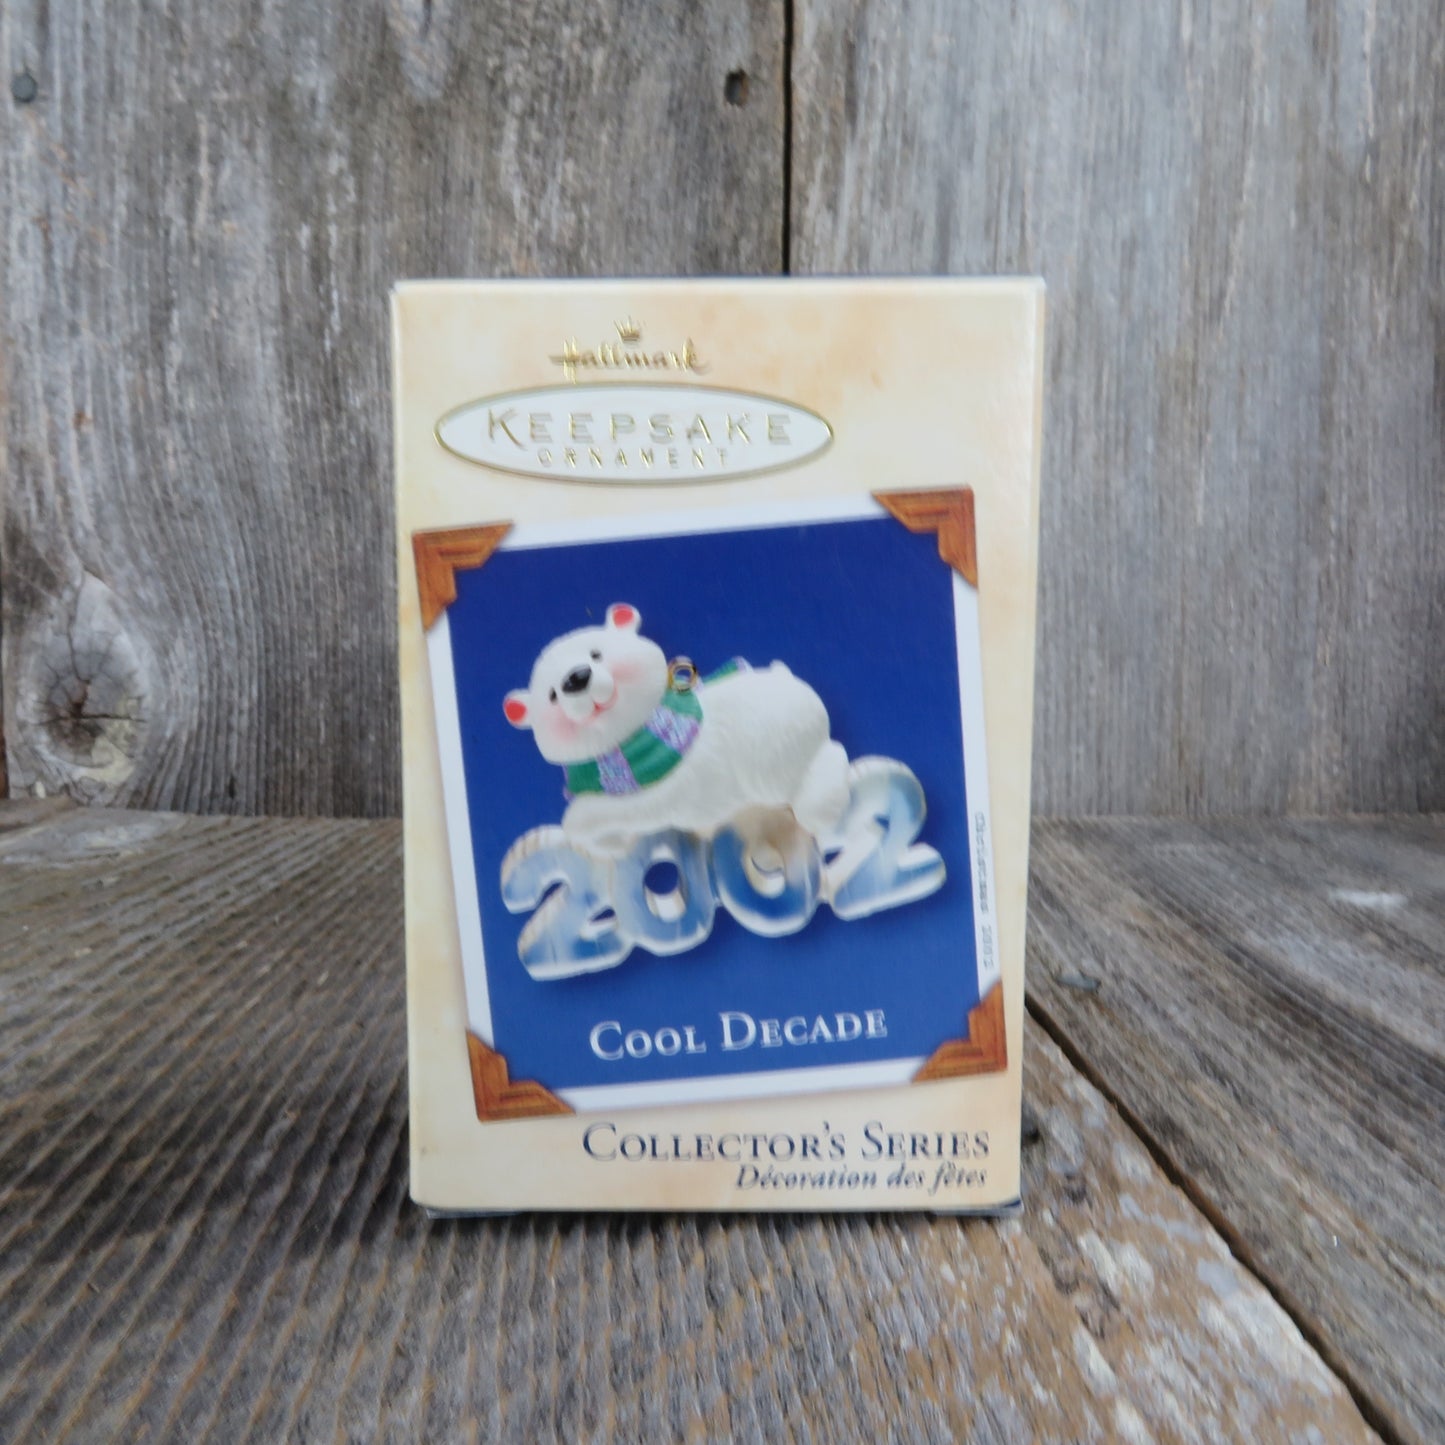 Polar Bear with Scarf Hallmark Keepsake Christmas Ornament 2002 Cool Decade - At Grandma's Table